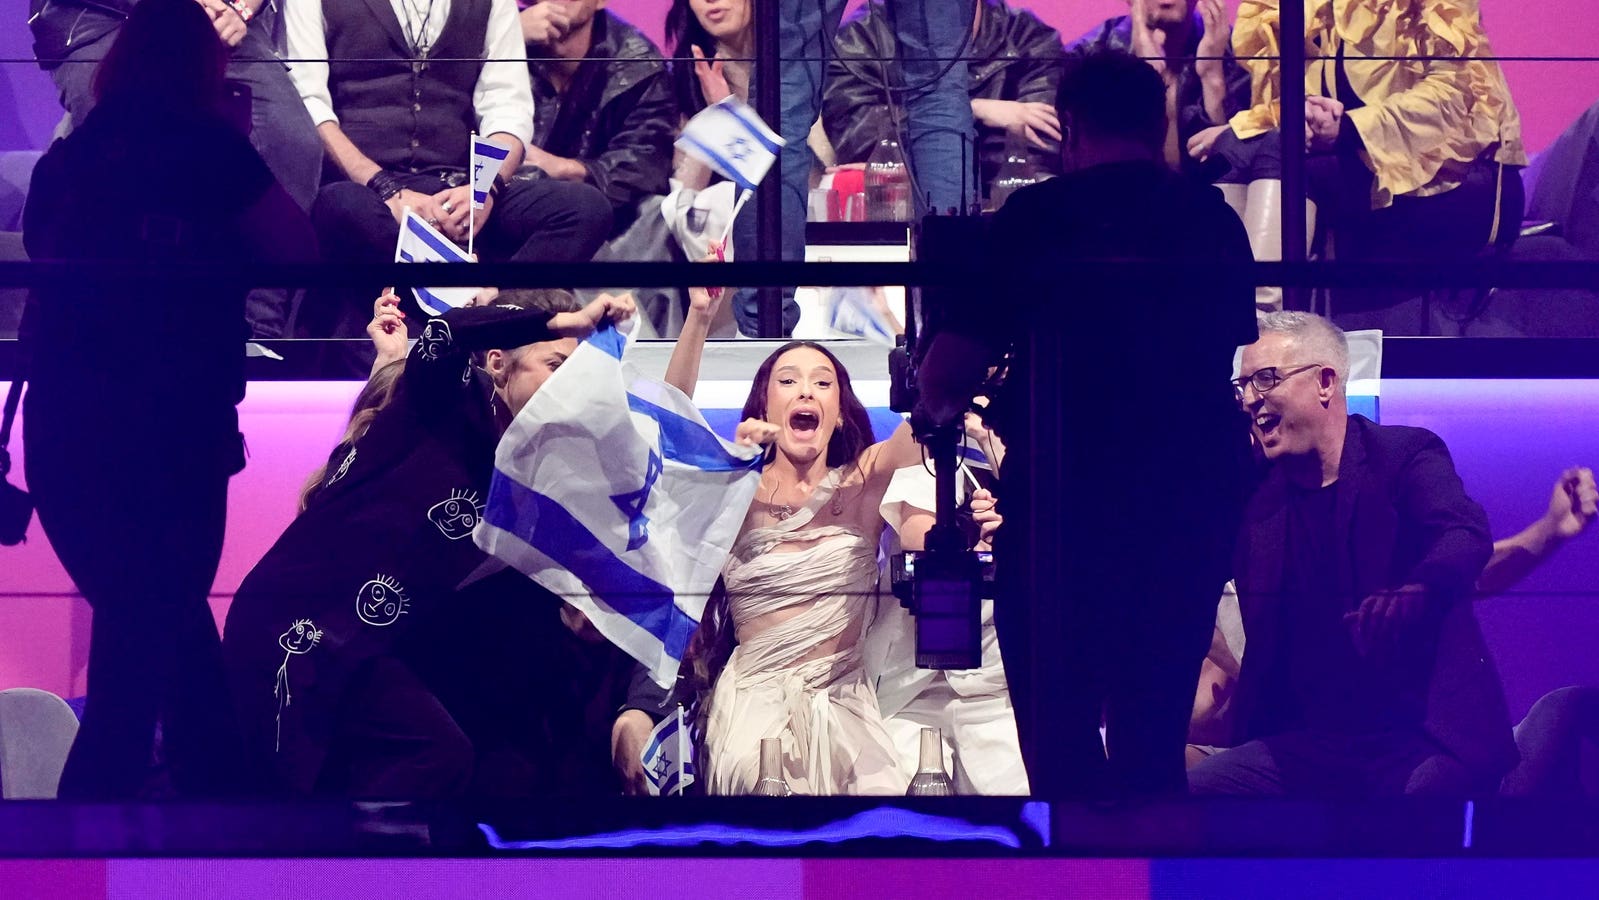 Izrael dociera do finału, podczas gdy protesty trwają